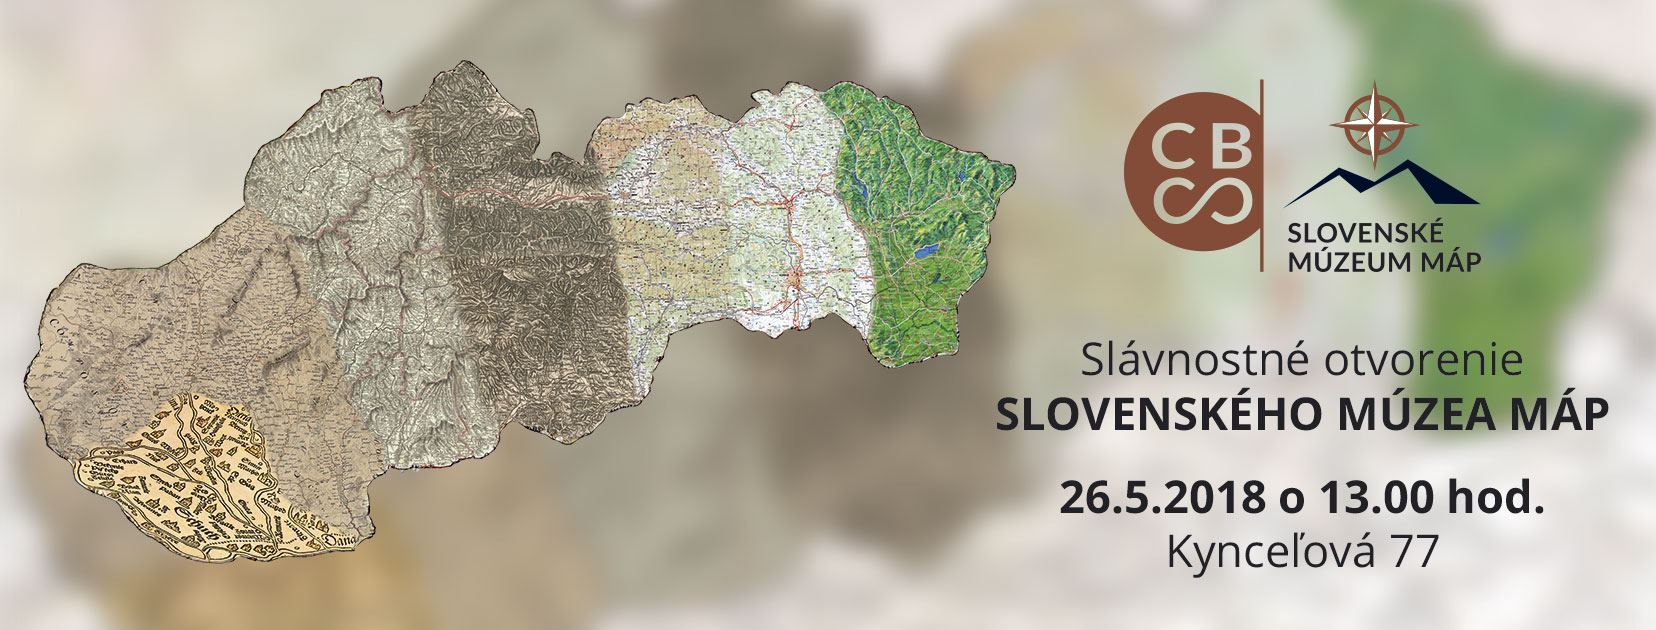 Slvnostn otvorenie Slovenskho mzea mp 2018 Kynceov 